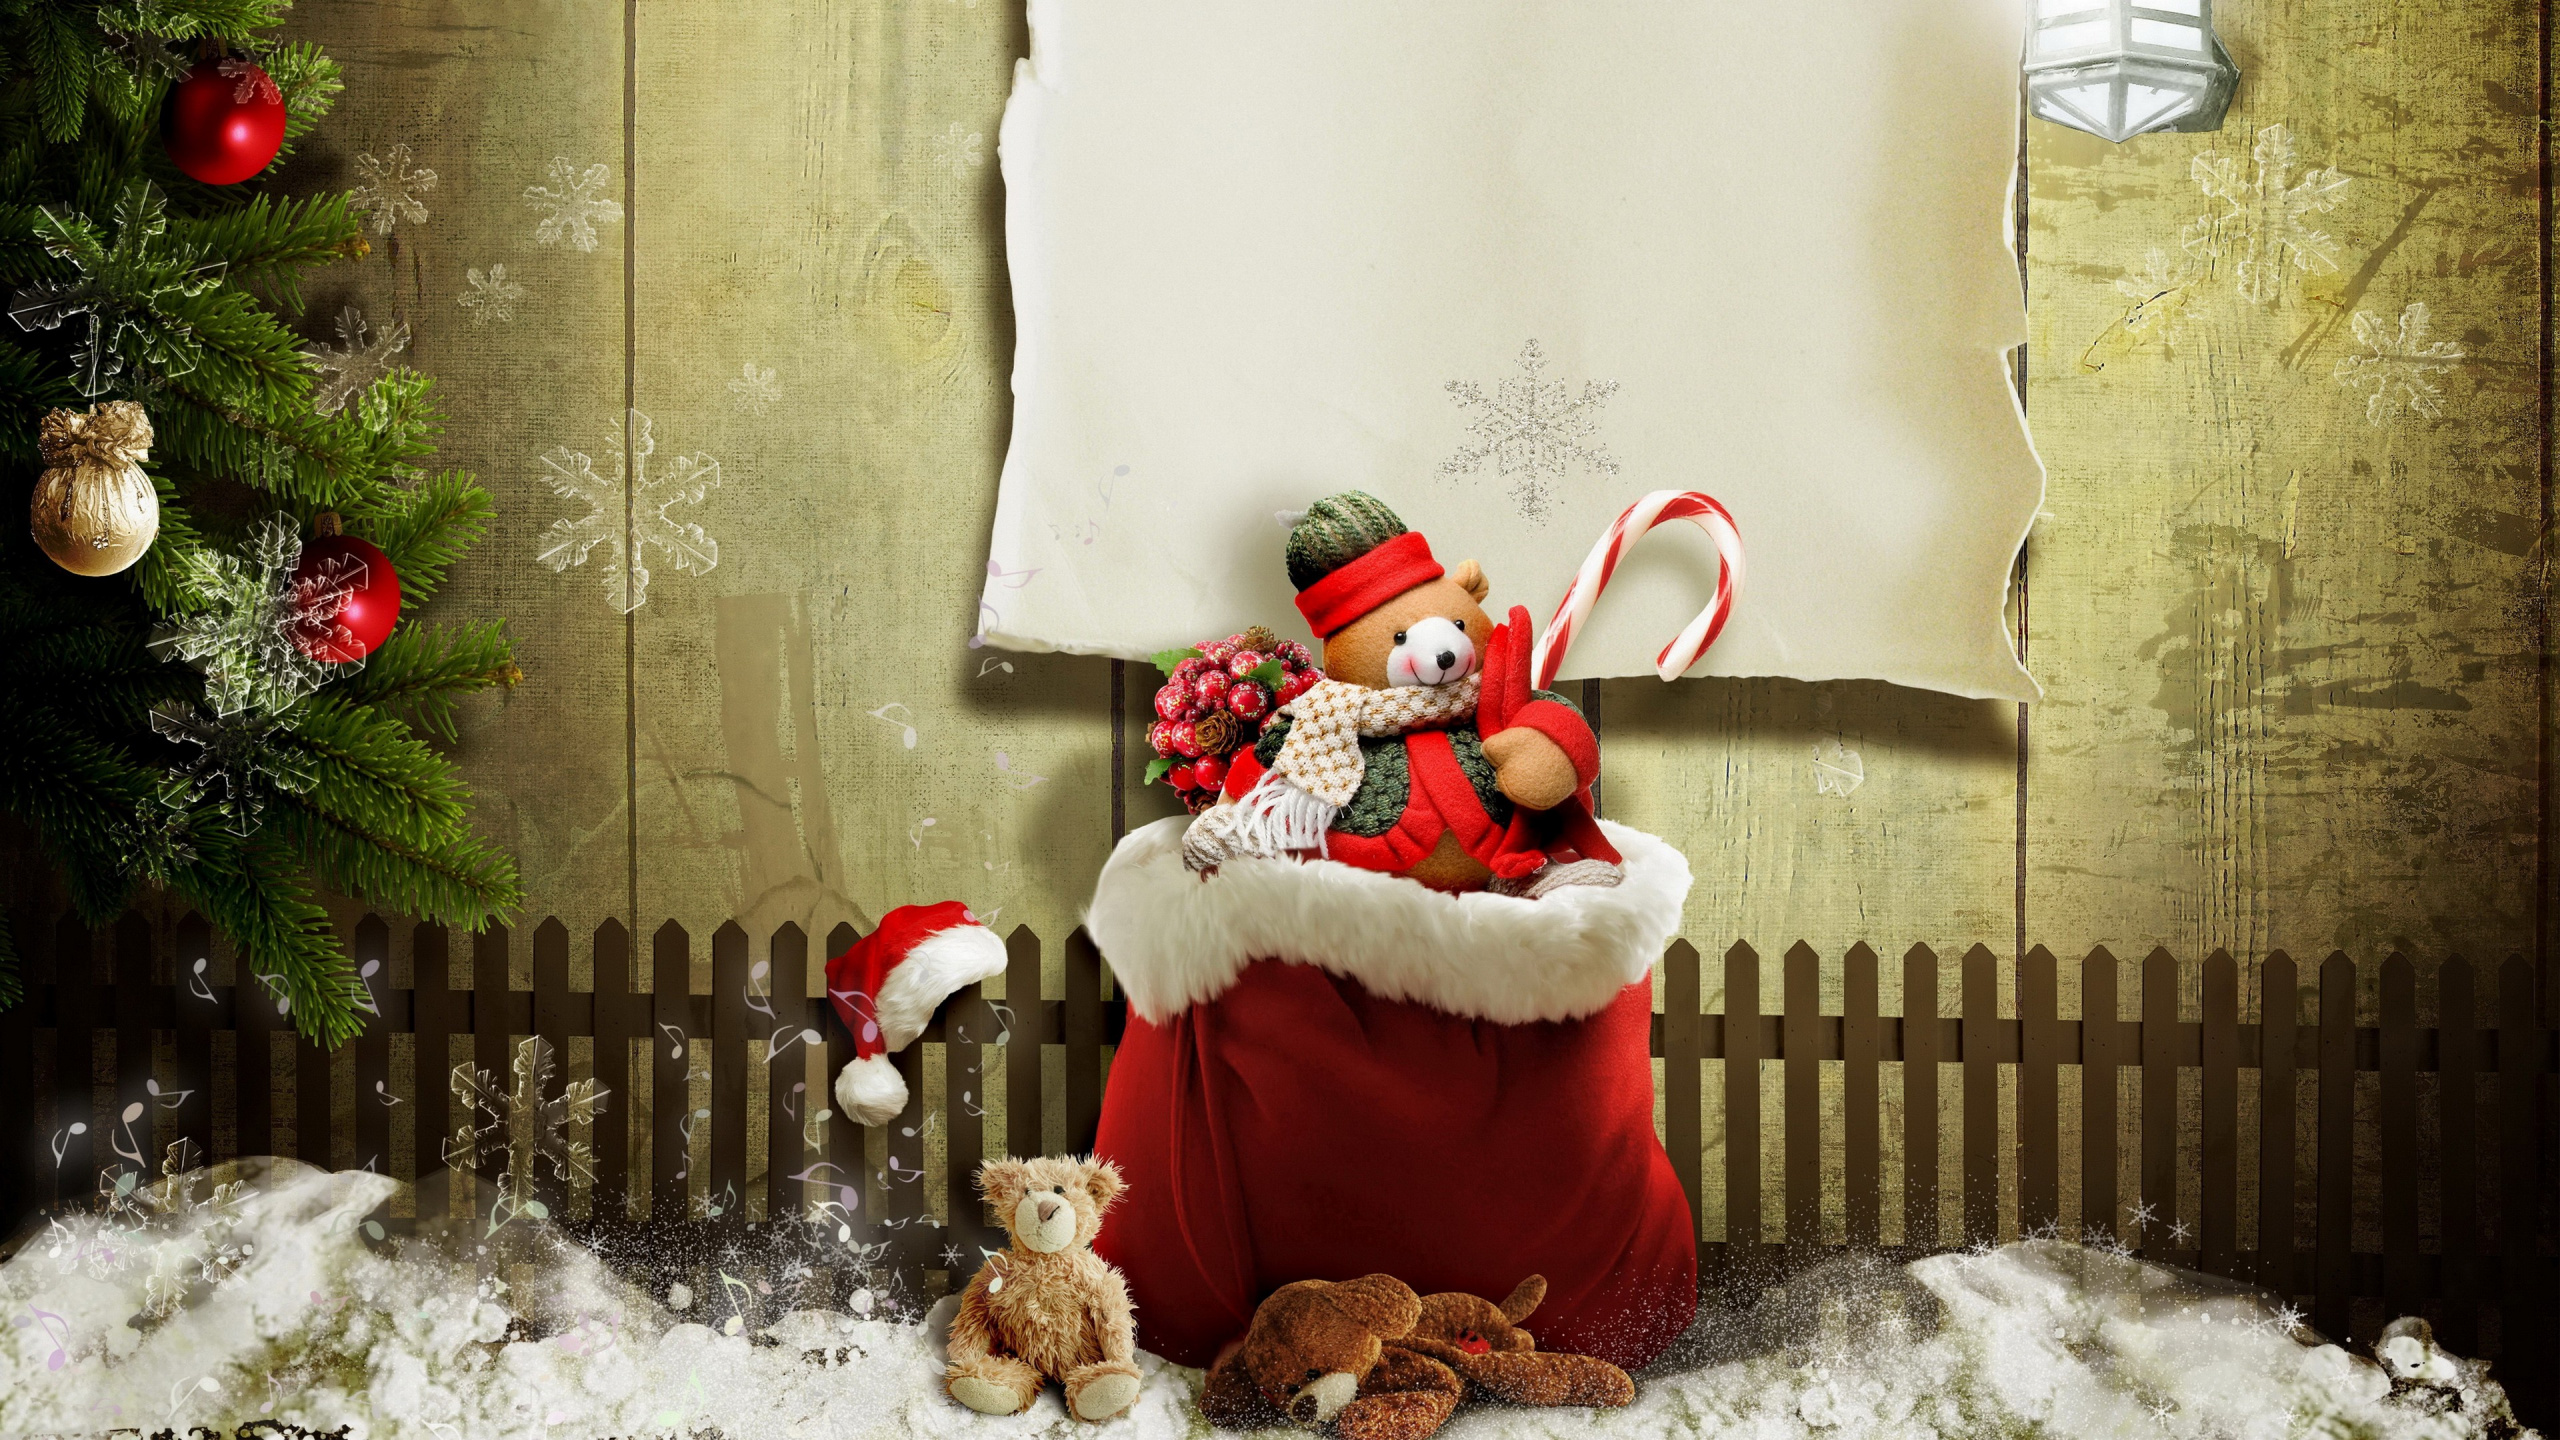 El Día De Navidad, Santa Claus, Regalo de Navidad, Navidad, Adorno de Navidad. Wallpaper in 2560x1440 Resolution